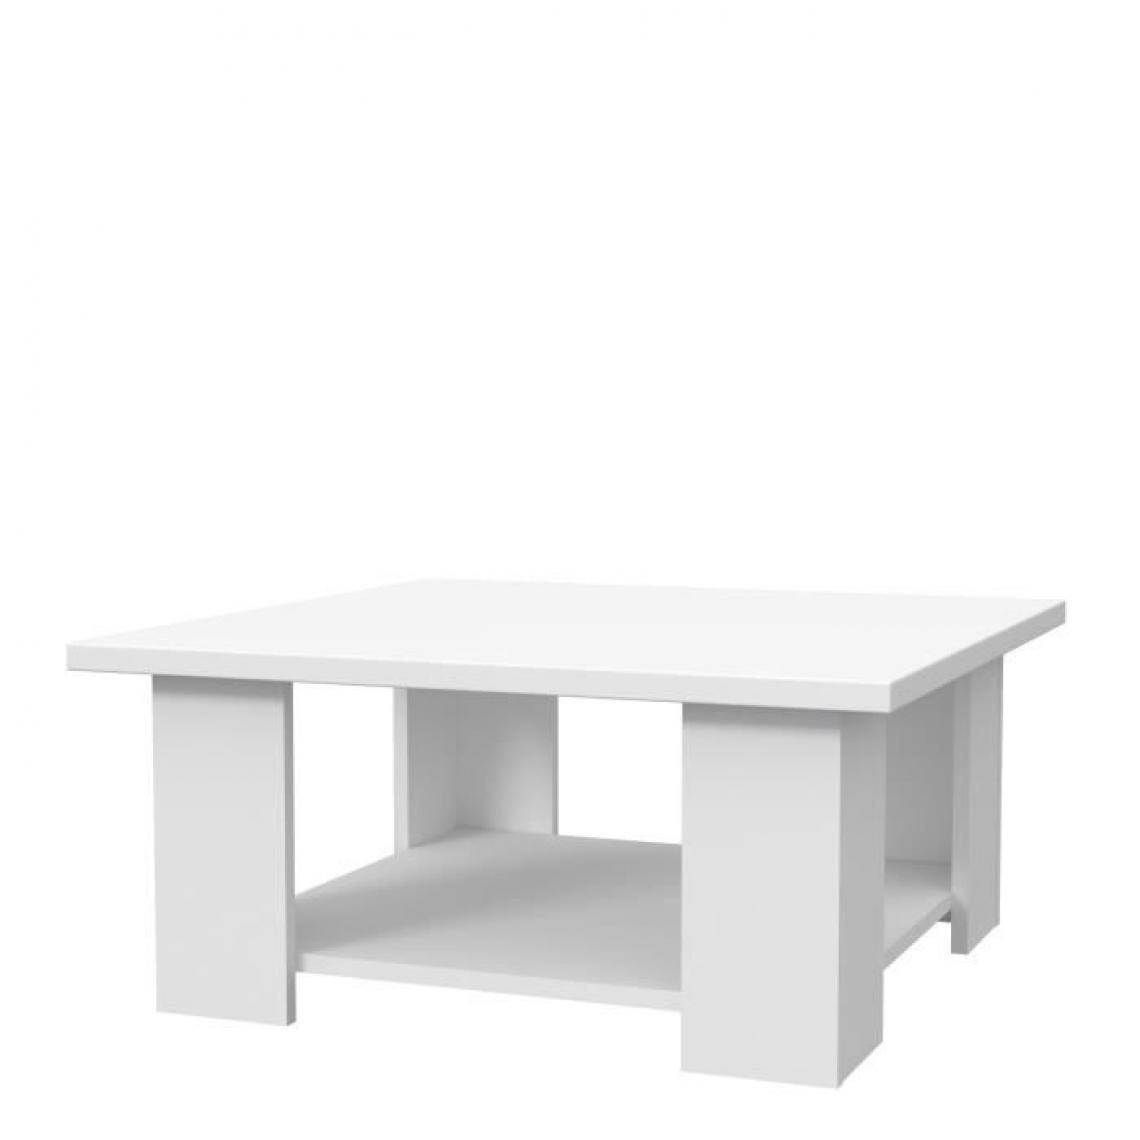 Cstore - PILVI - table basse carré panneau de particules blanc mat contemporain l 67xp 67xh 31 cm - Tables basses